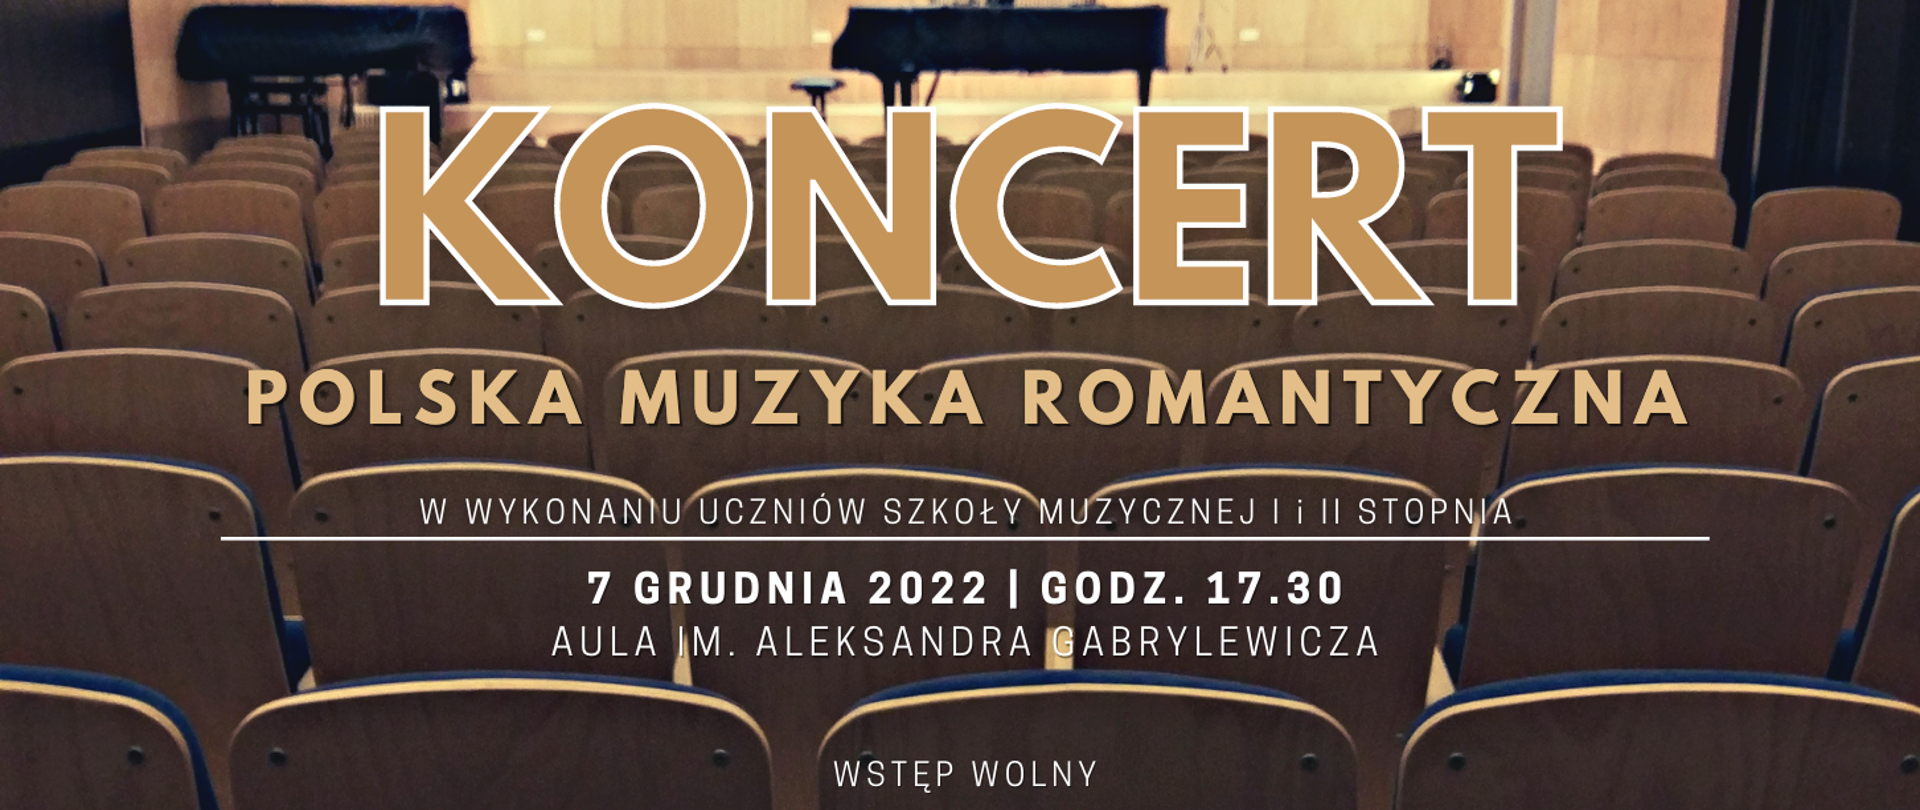 Baner przedstawiający widok Auli PSM w Chorzowie od strony widowni oraz szczegółowe dane dotyczące koncertu Polska Muzyka Romantyczna (datę, godzinę oraz miejsce wydarzenia)